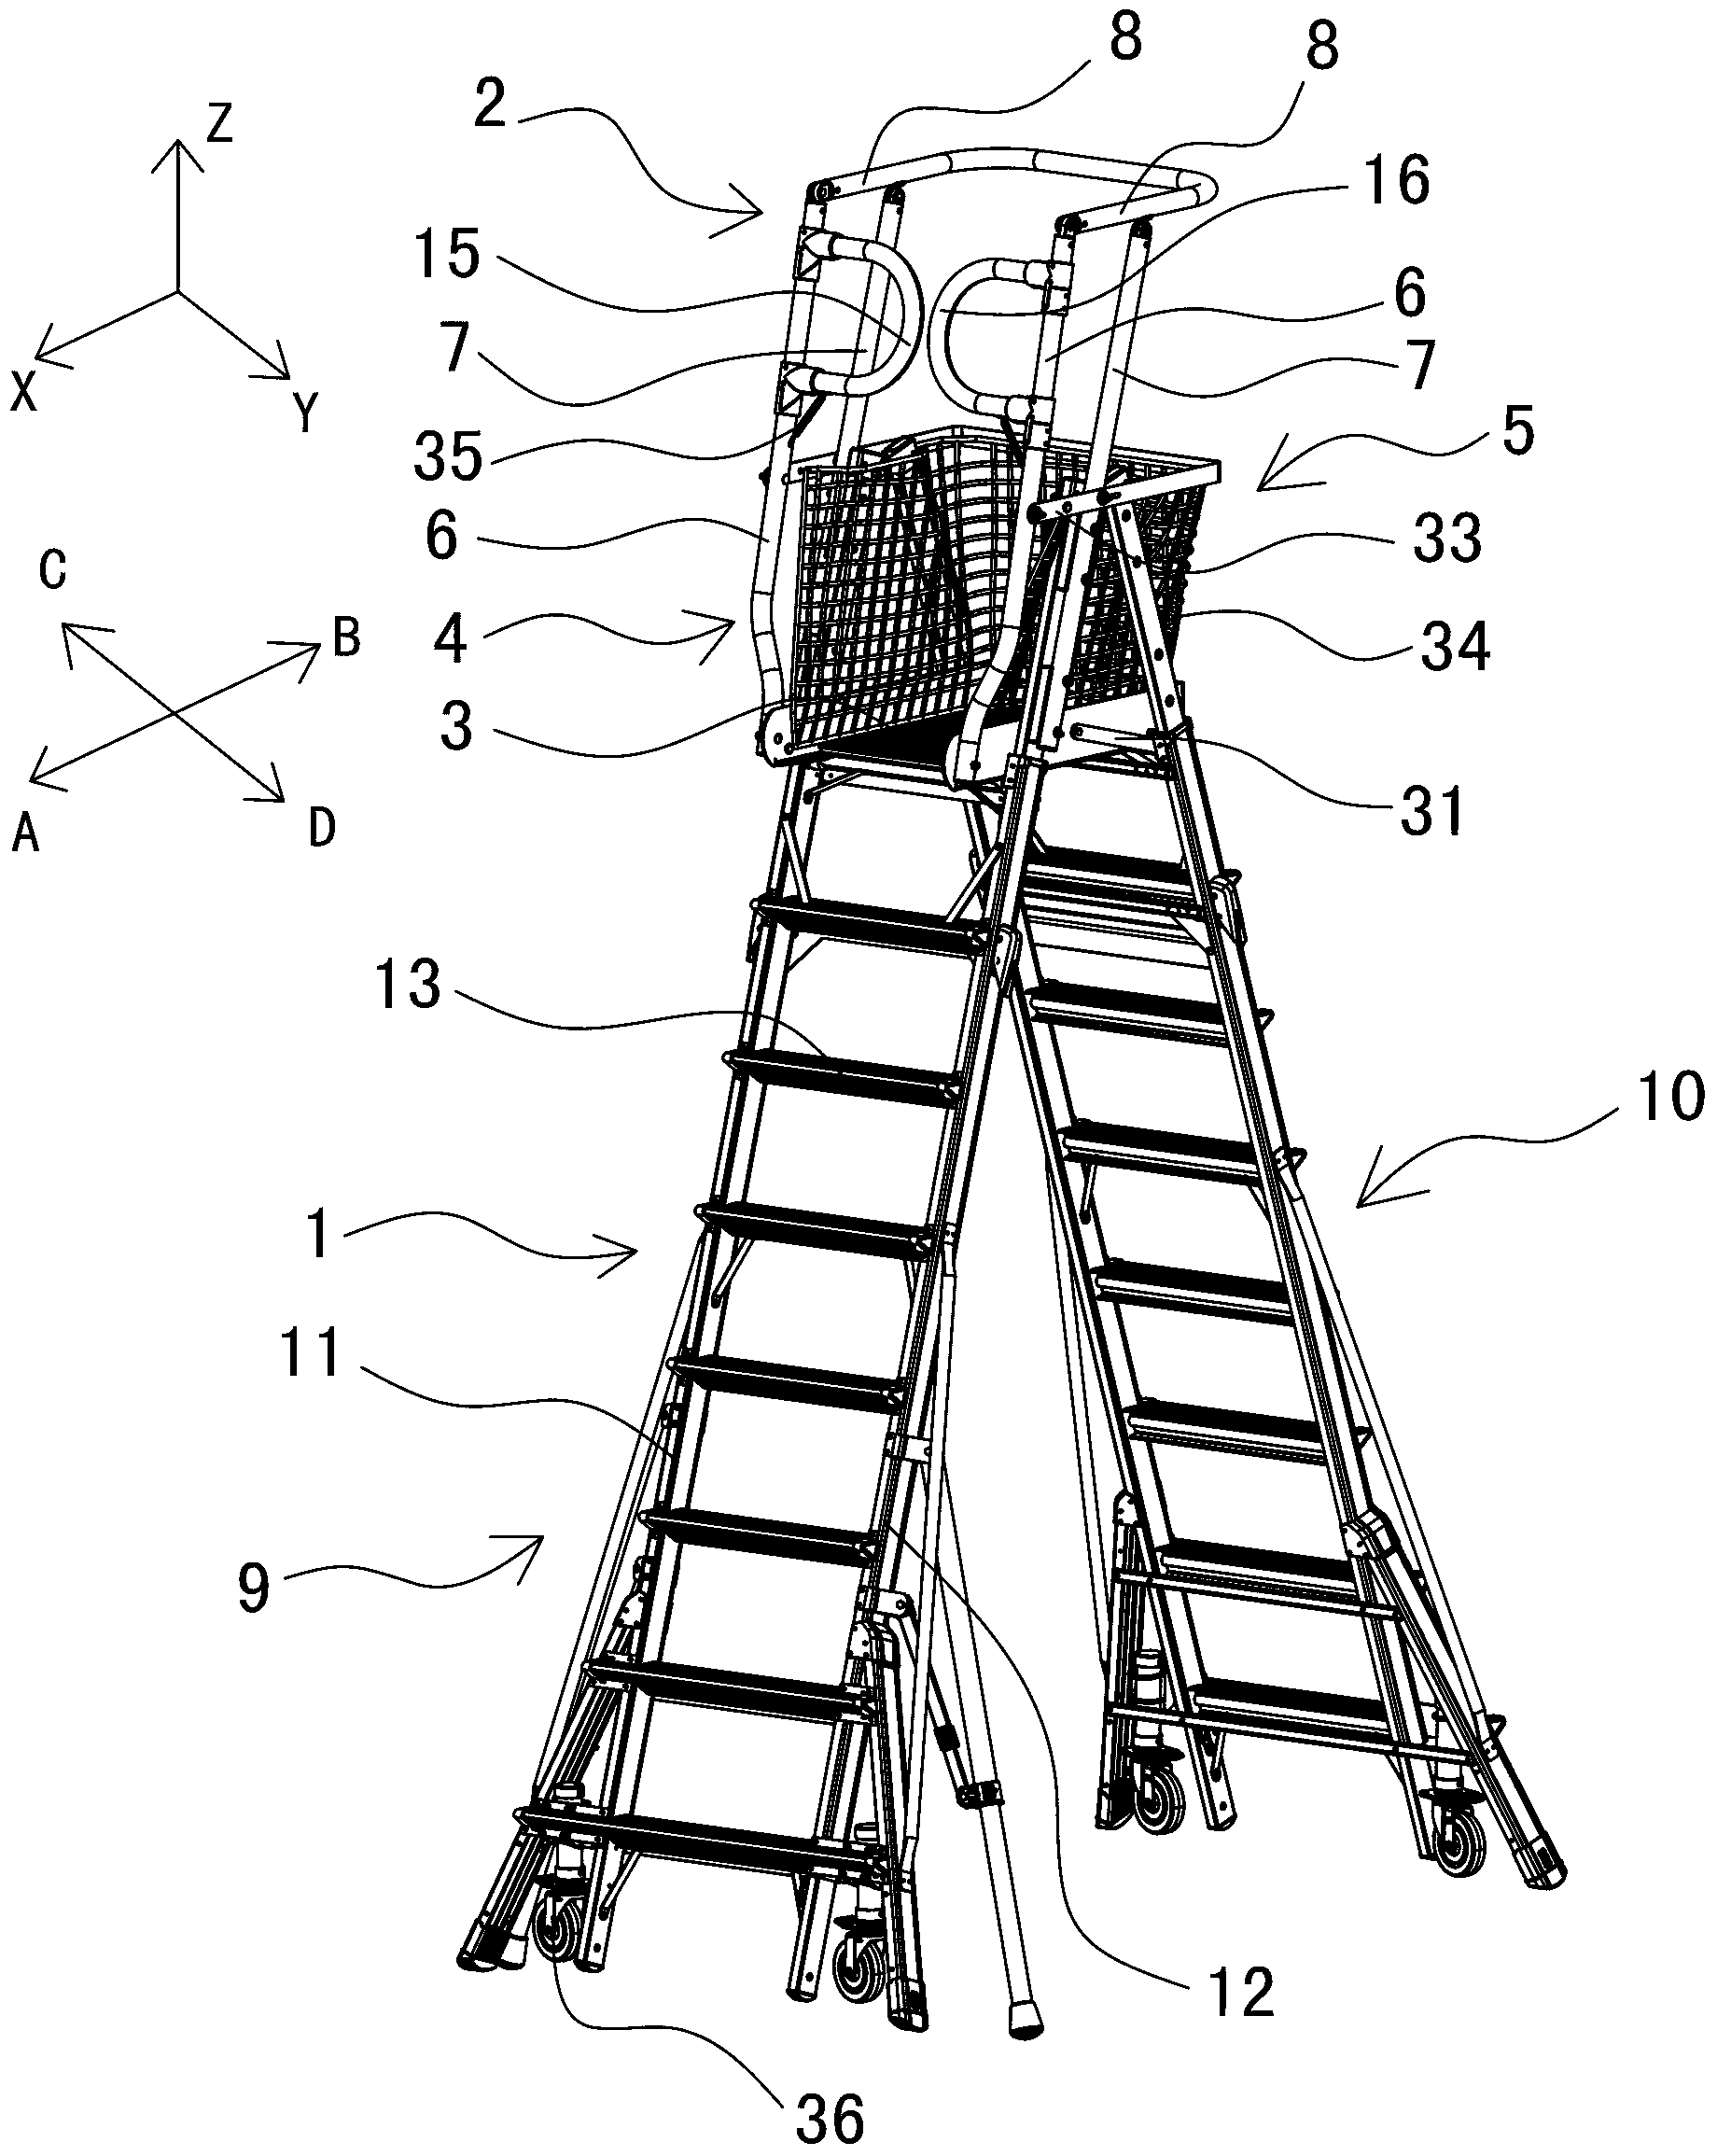 Ladder type working platform